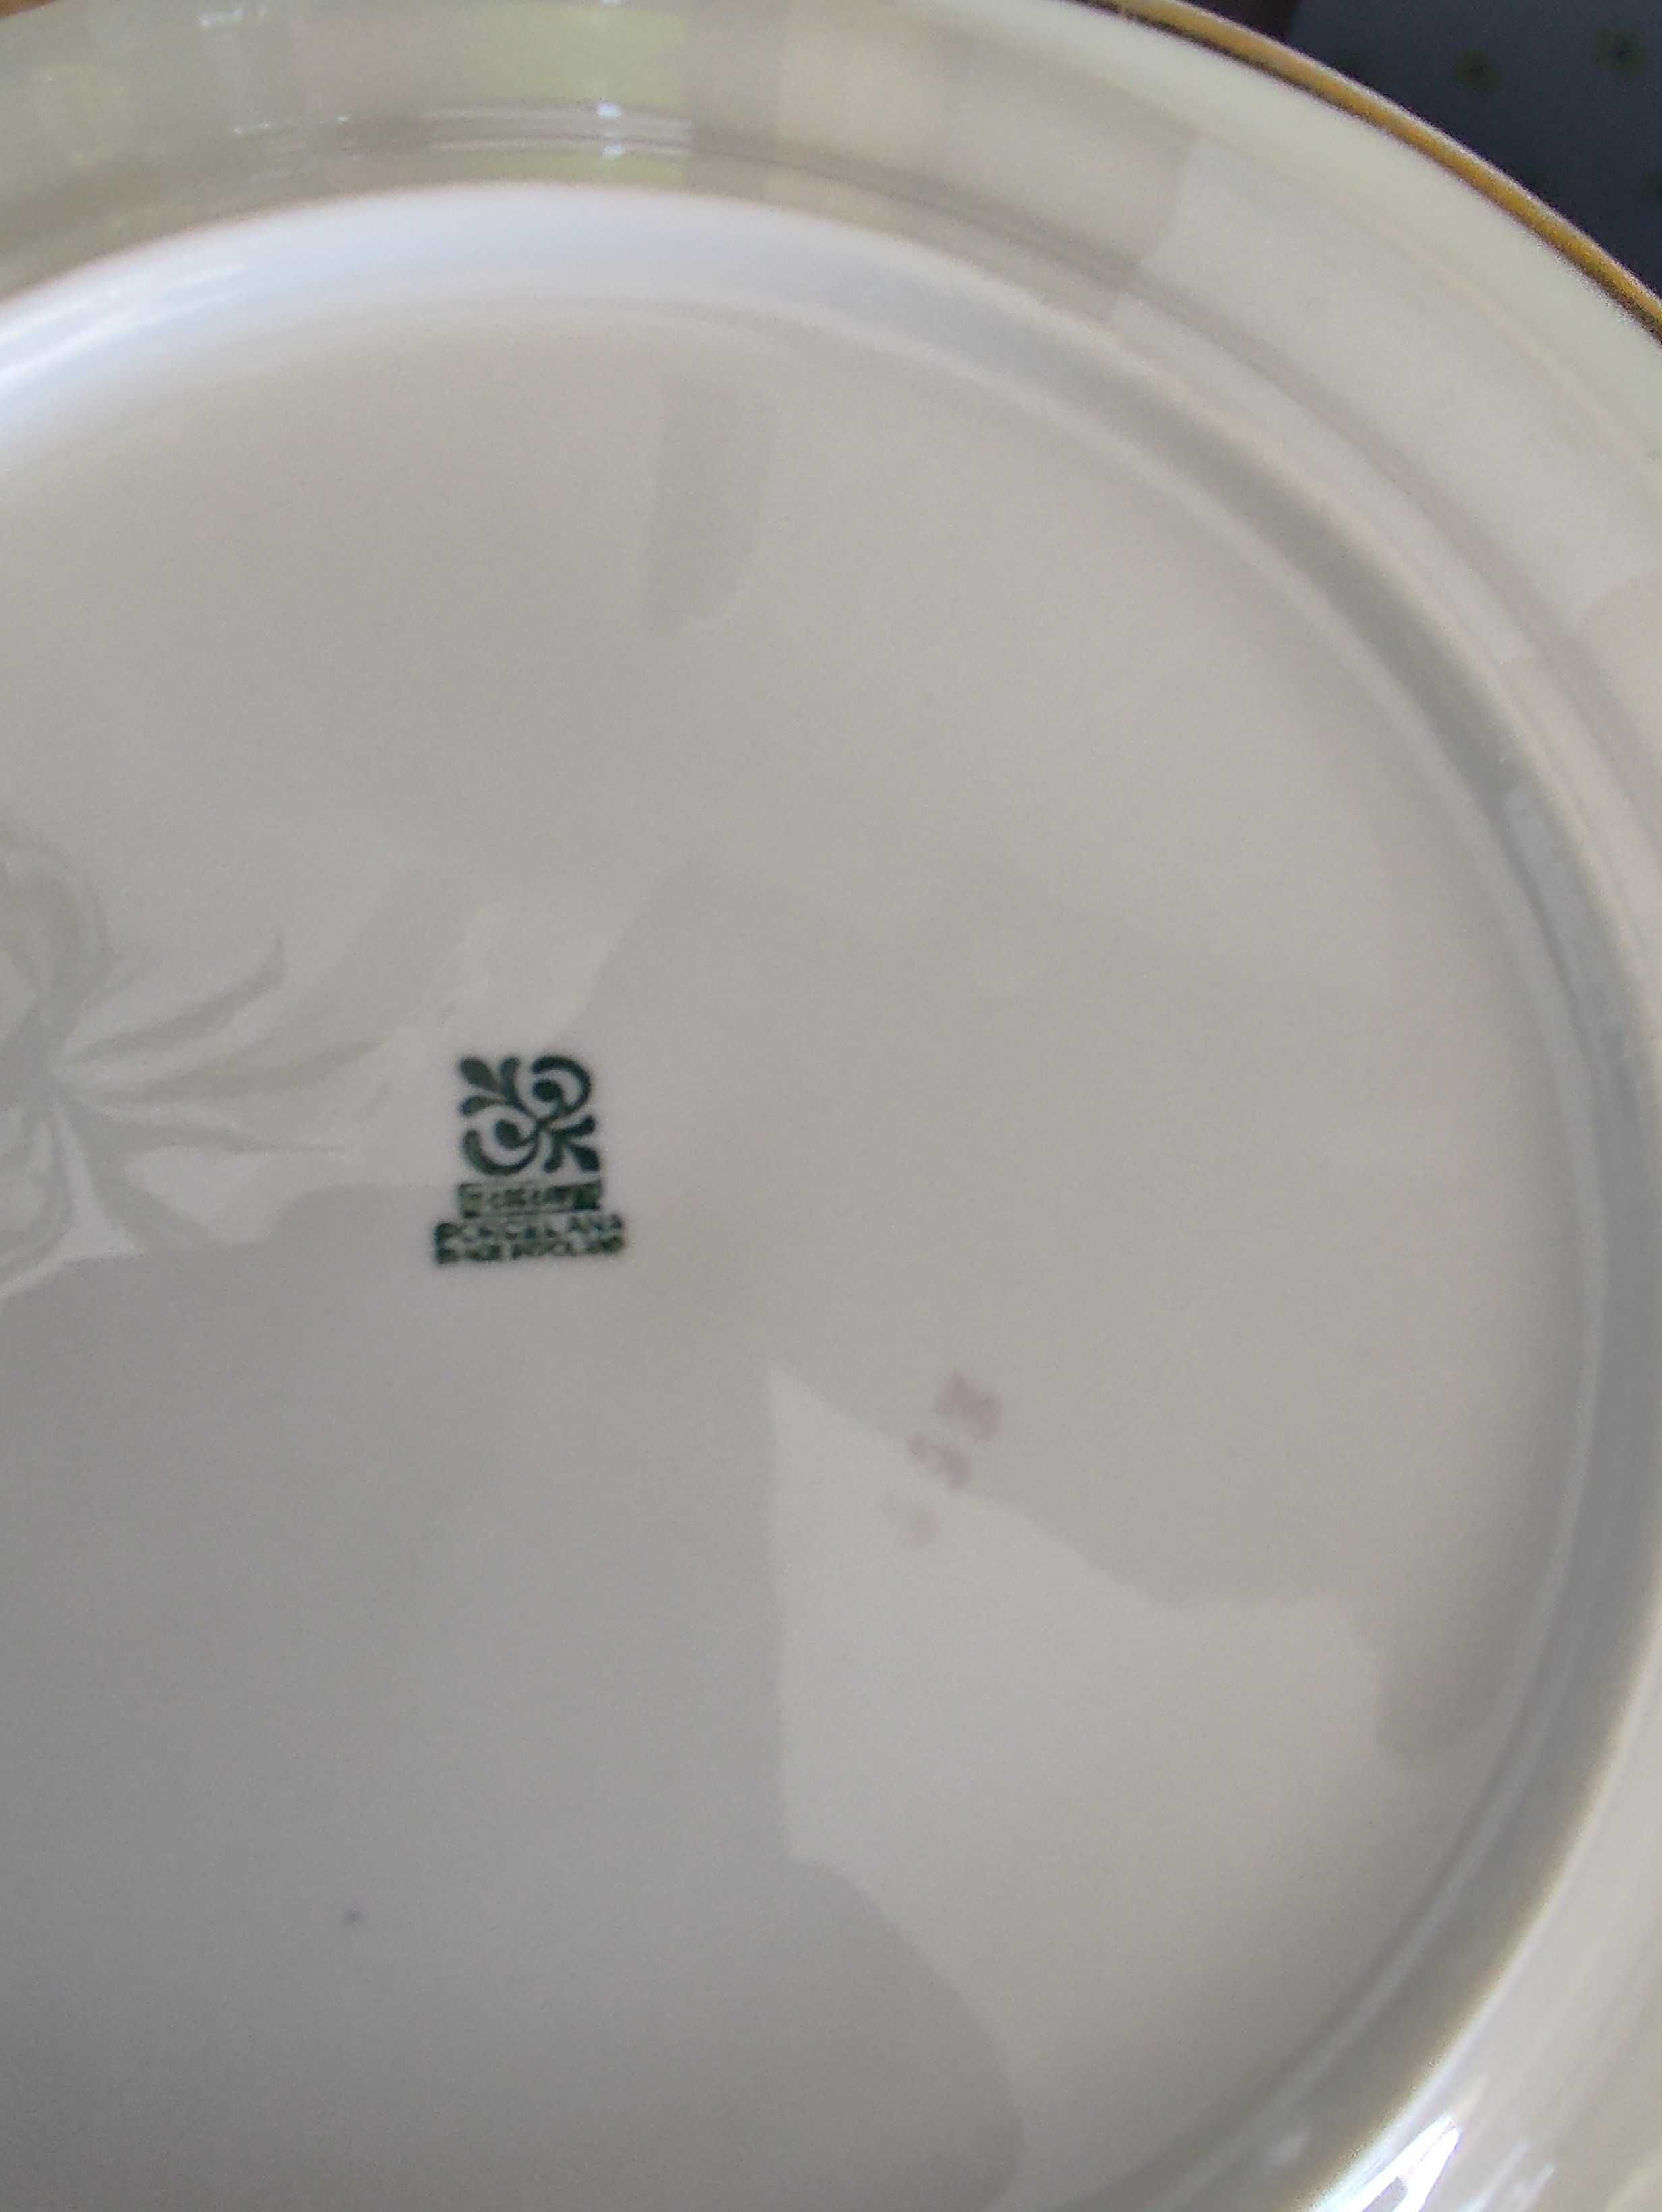 Talerze Włocławek antyk porcelana prl 4 płytkie 6 gł3bokich